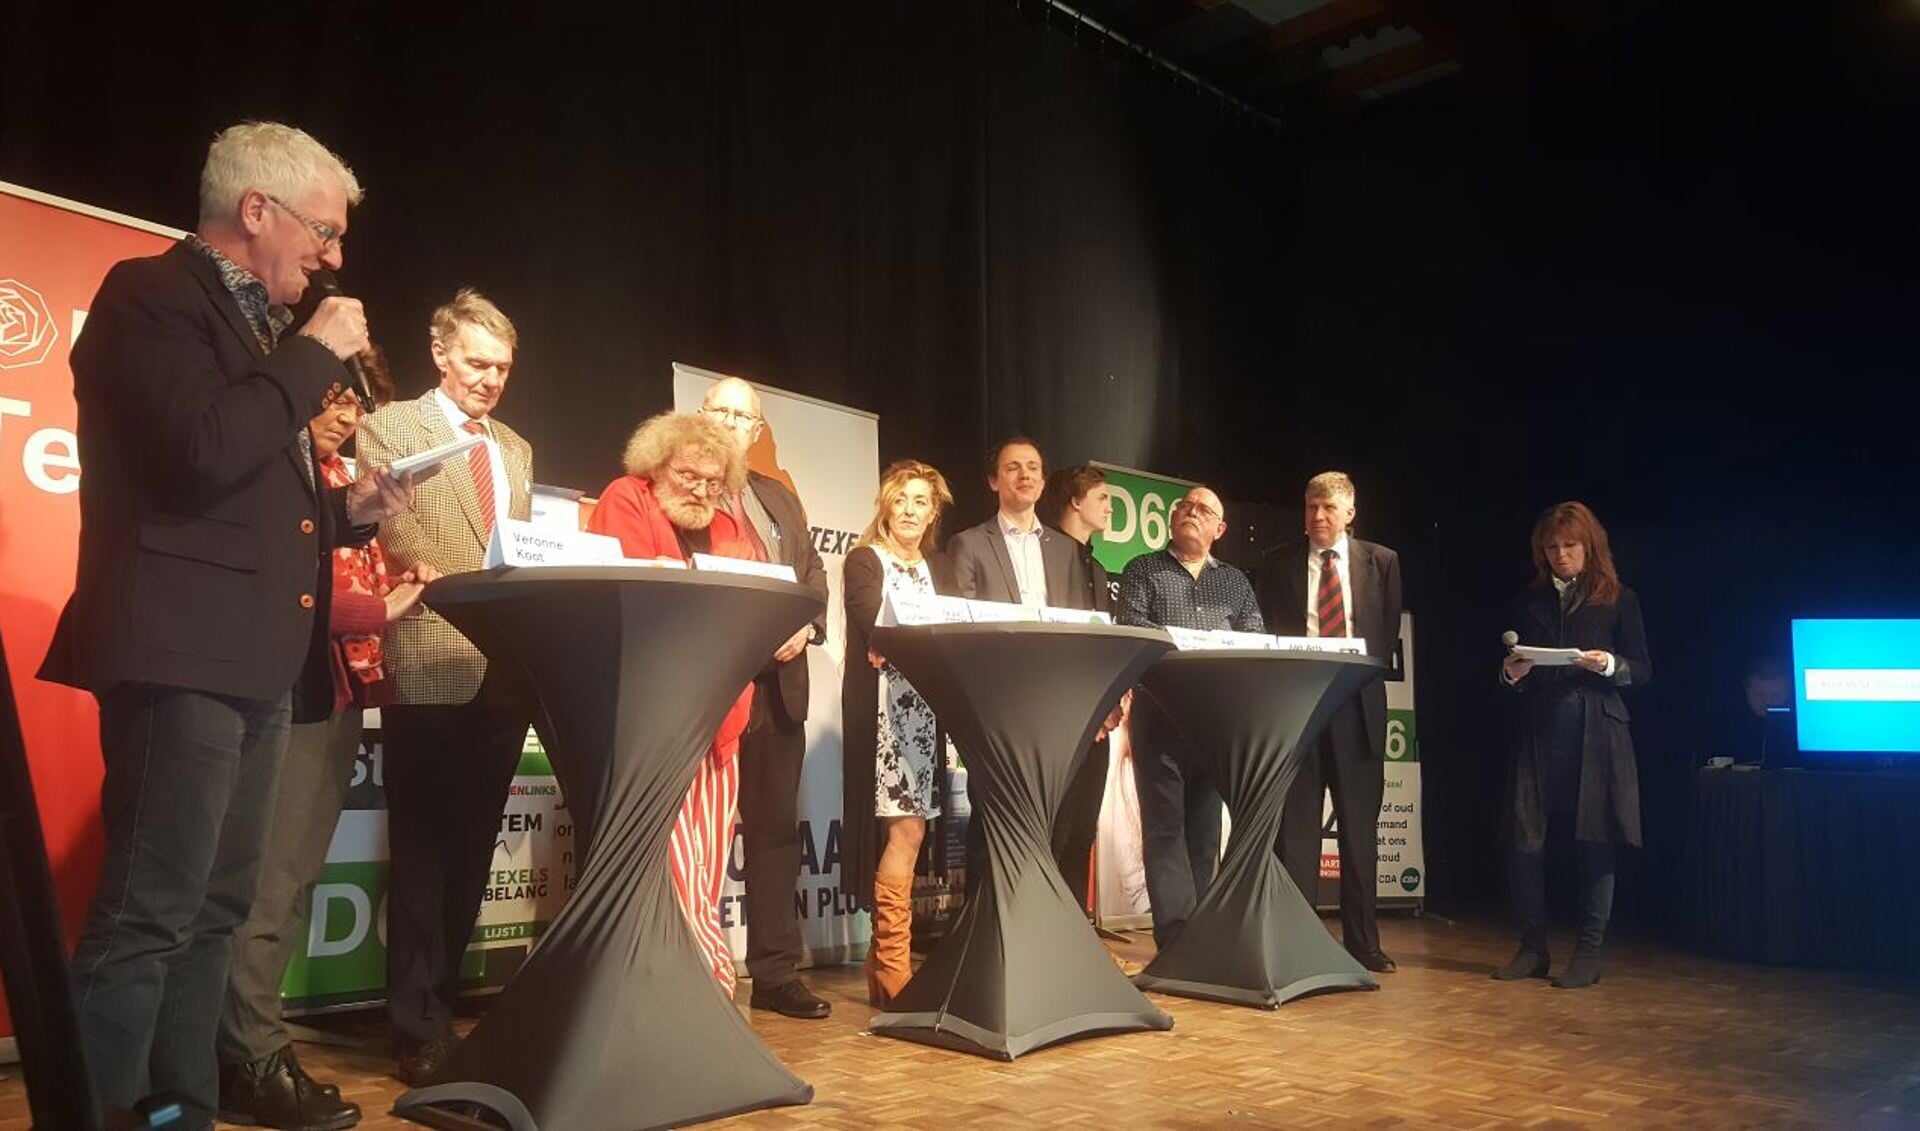 Tessa van Daalen en Henk Slikker presenteerden het verkiezingsdebat.